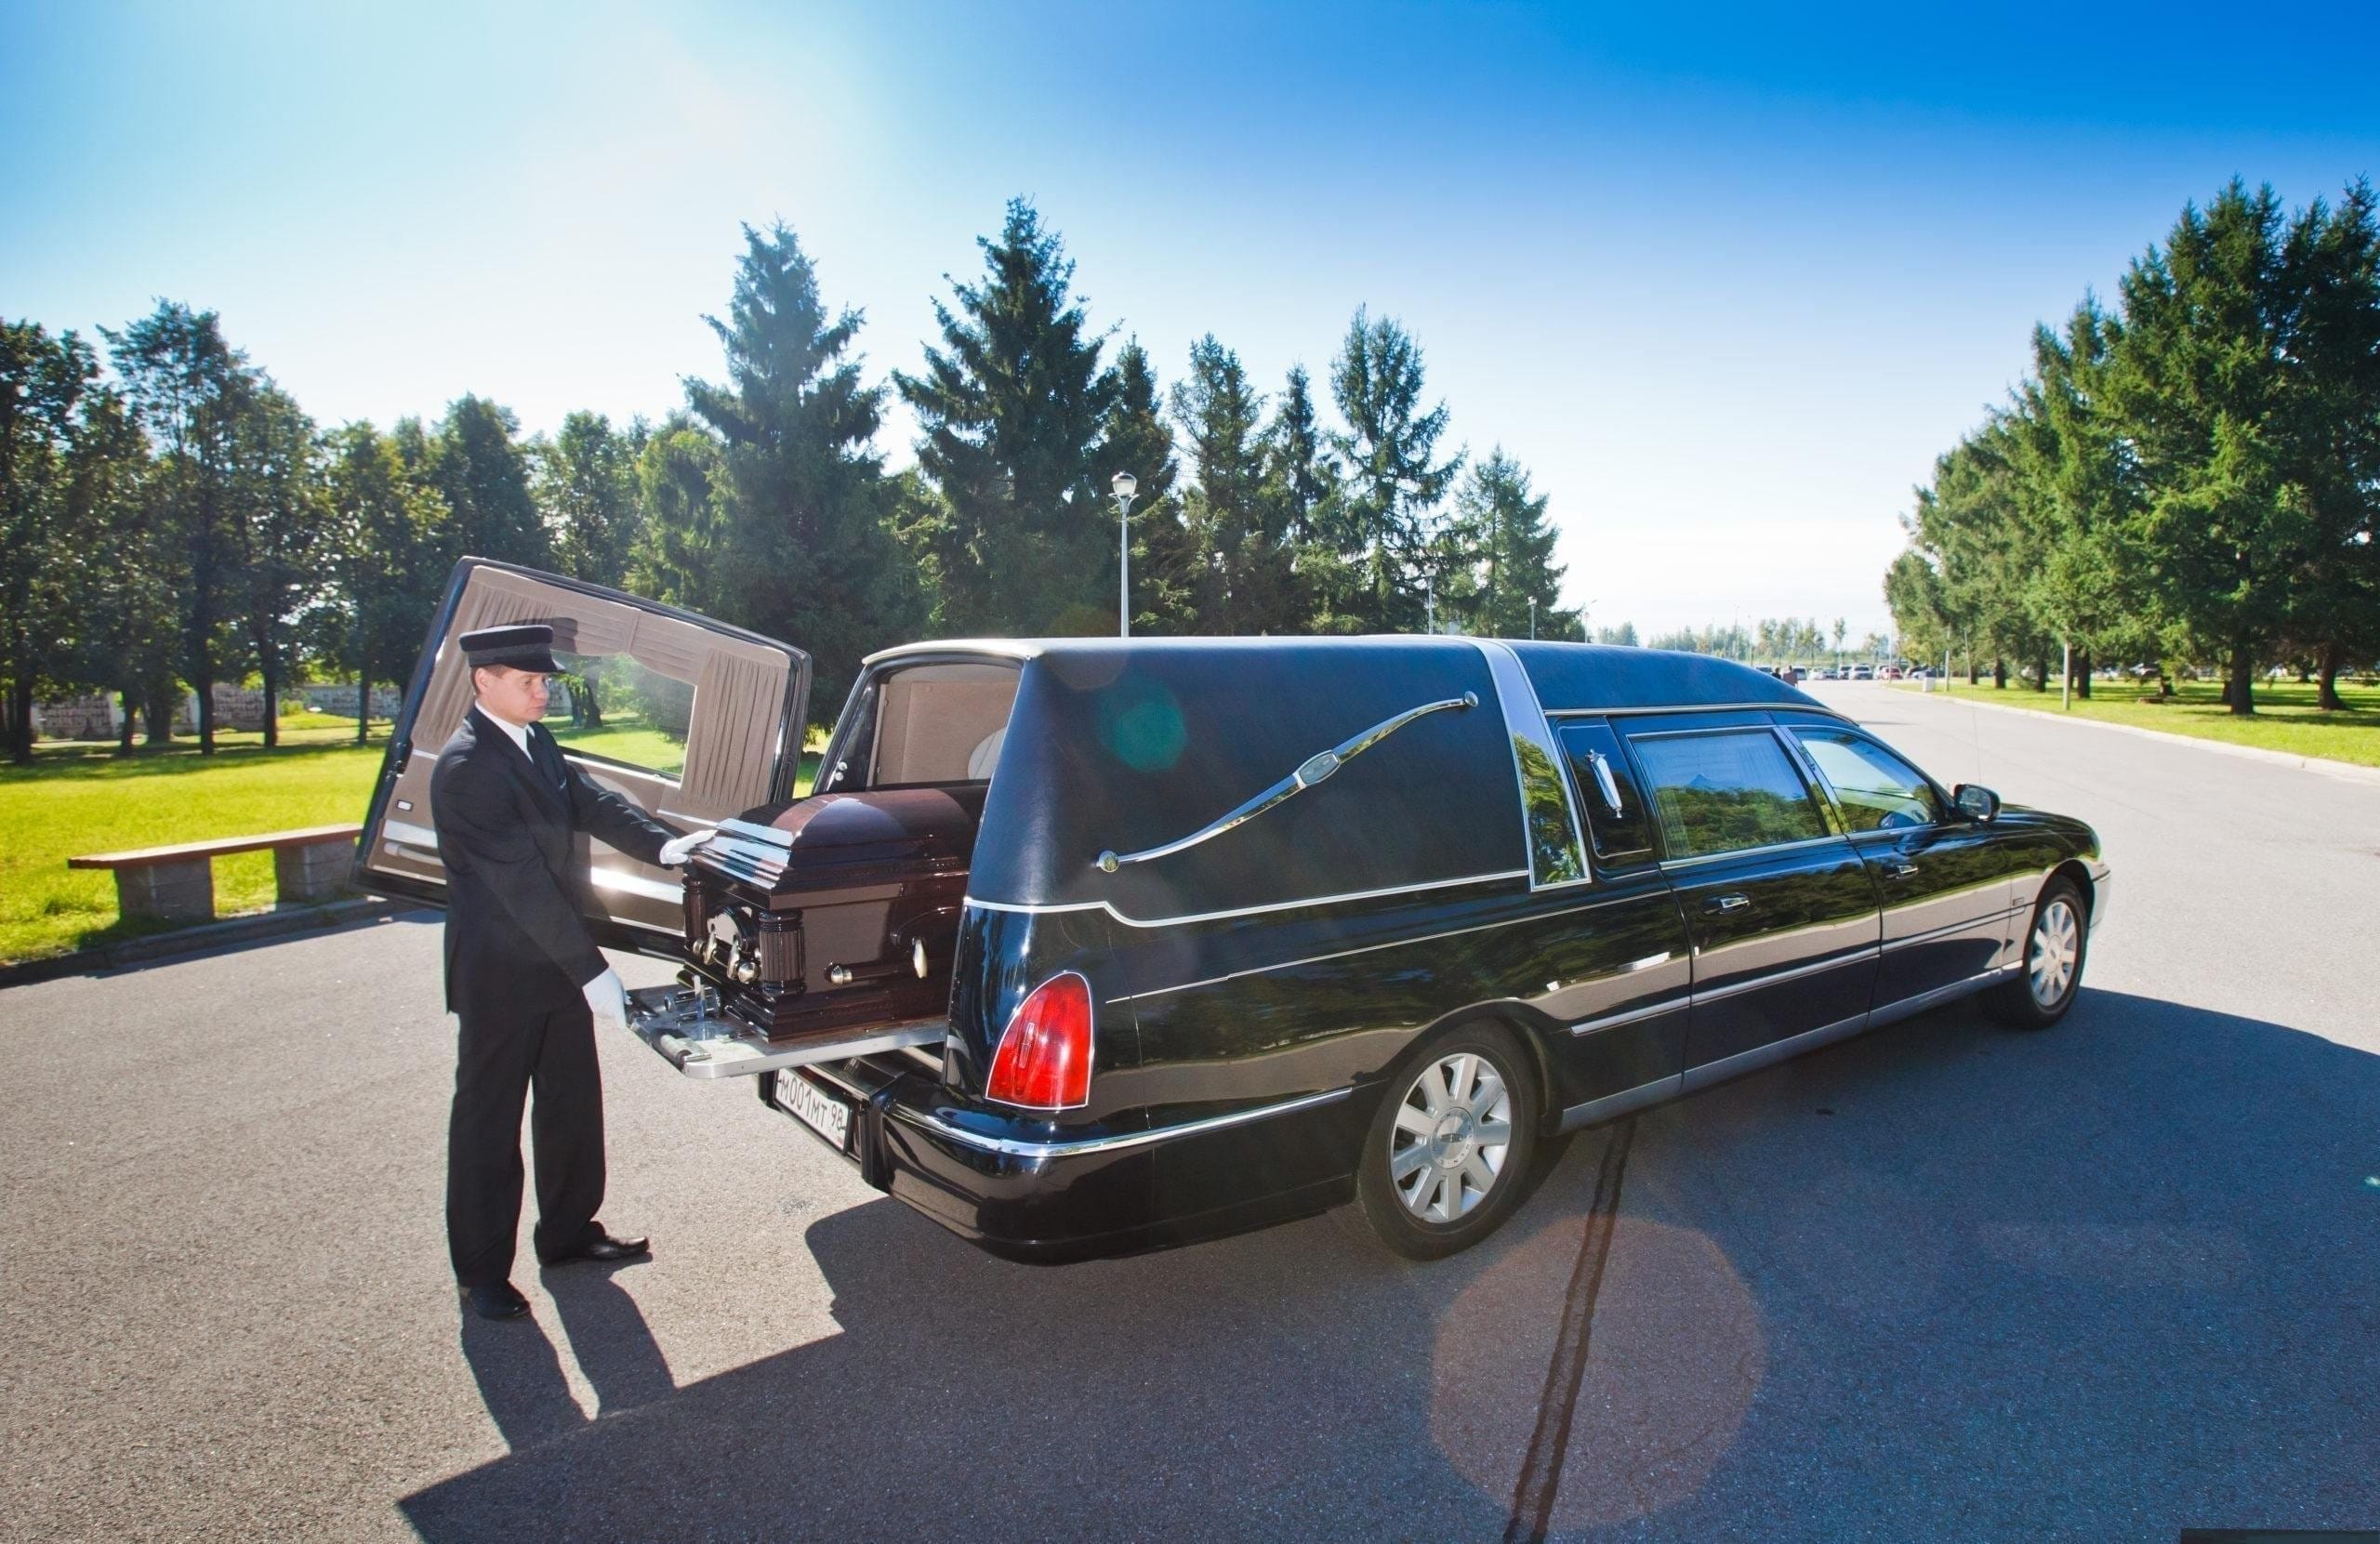 Катафалк –це транспорт, який призначений для транспортування труни з тілом та родичами померлого людини на кладовищі, в крематорії та повернення до місця меморіального обіду.